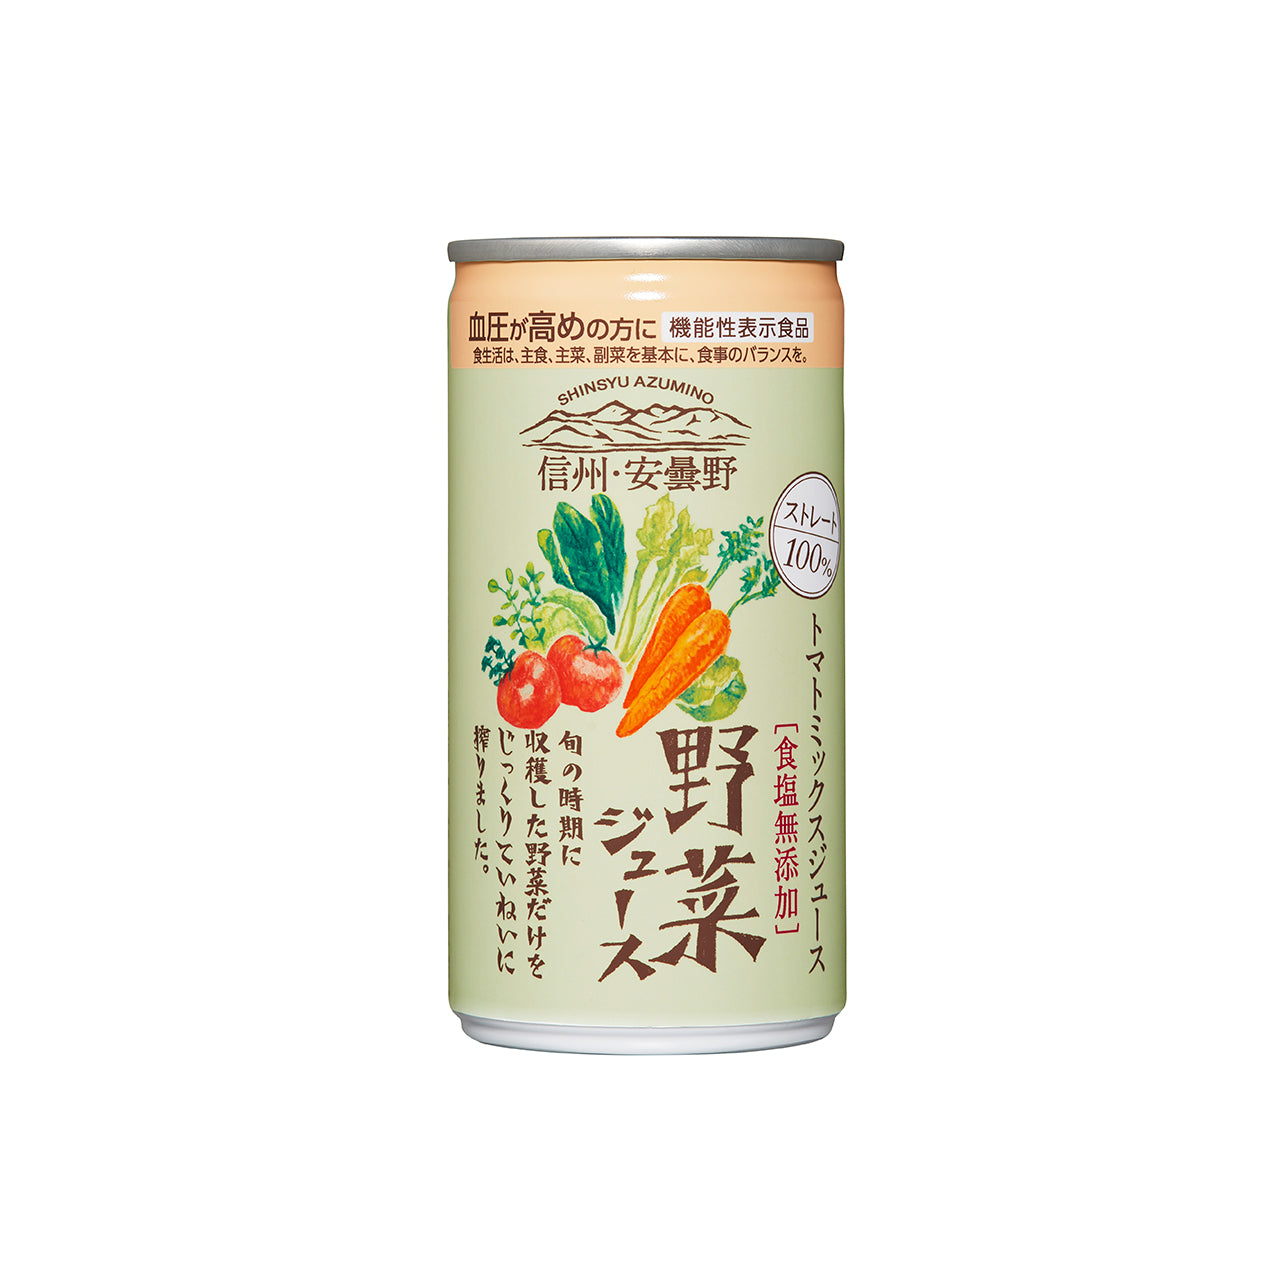 –　お試し】信州・安曇野野菜ジュース190g×1本　九州屋plus+